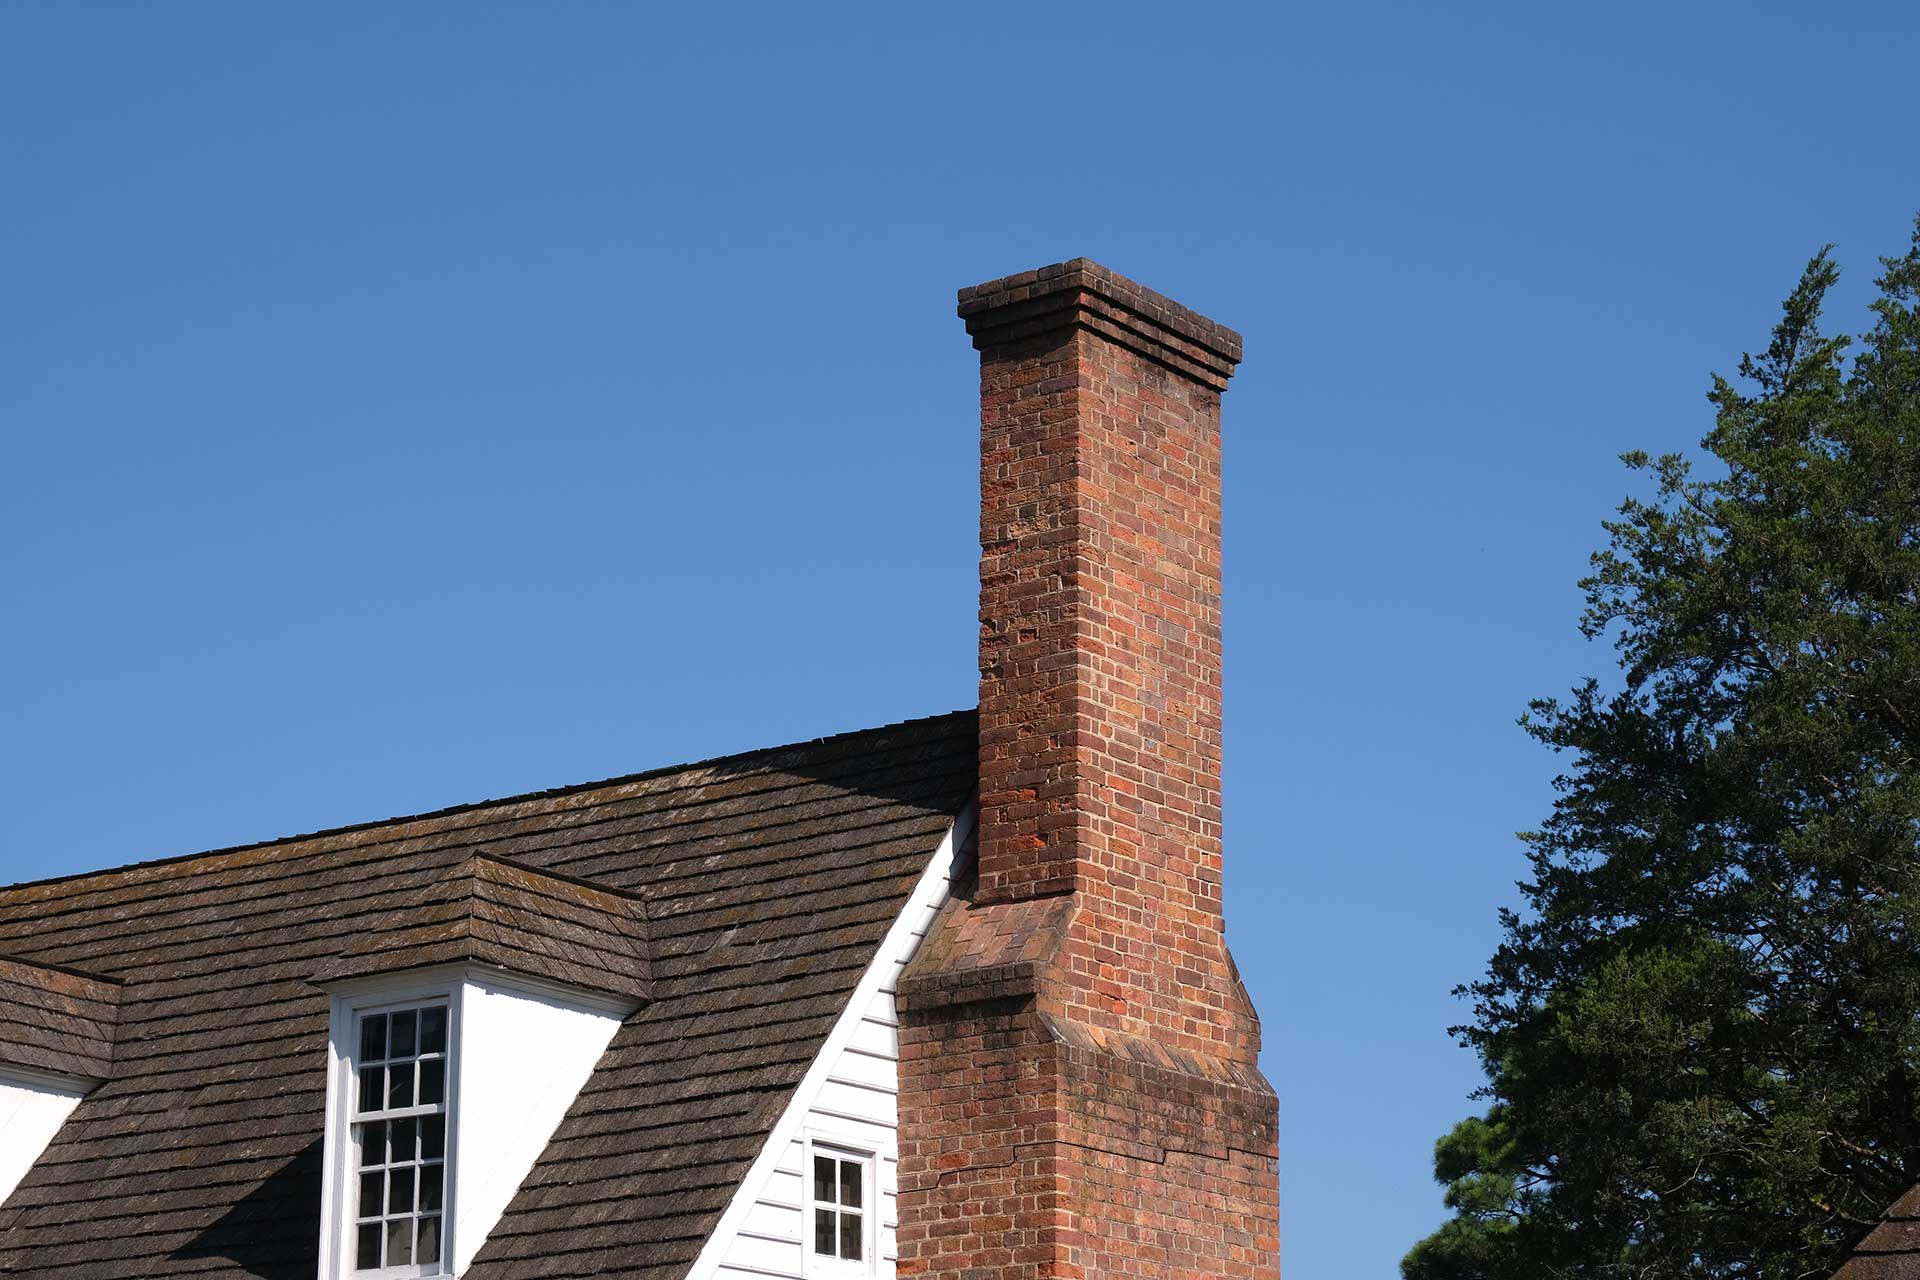 tilting chimney